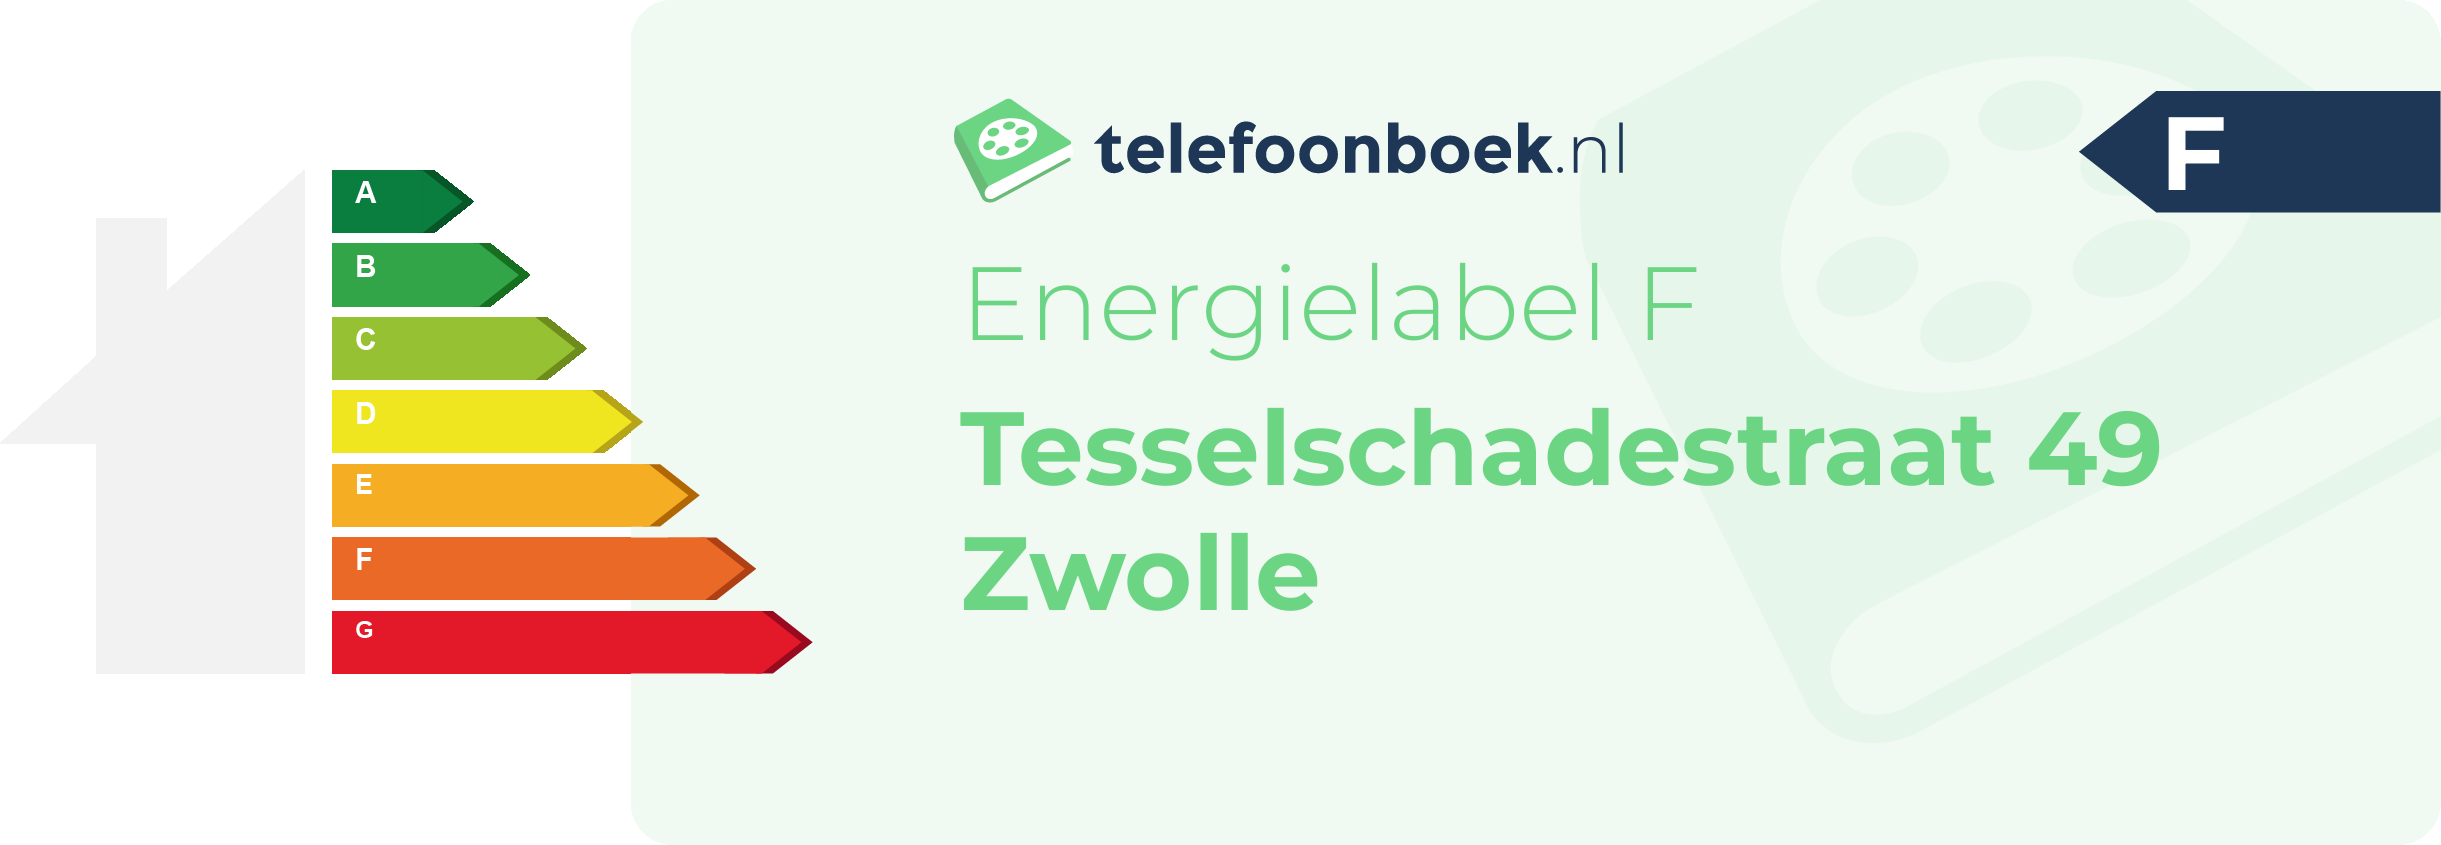 Energielabel Tesselschadestraat 49 Zwolle